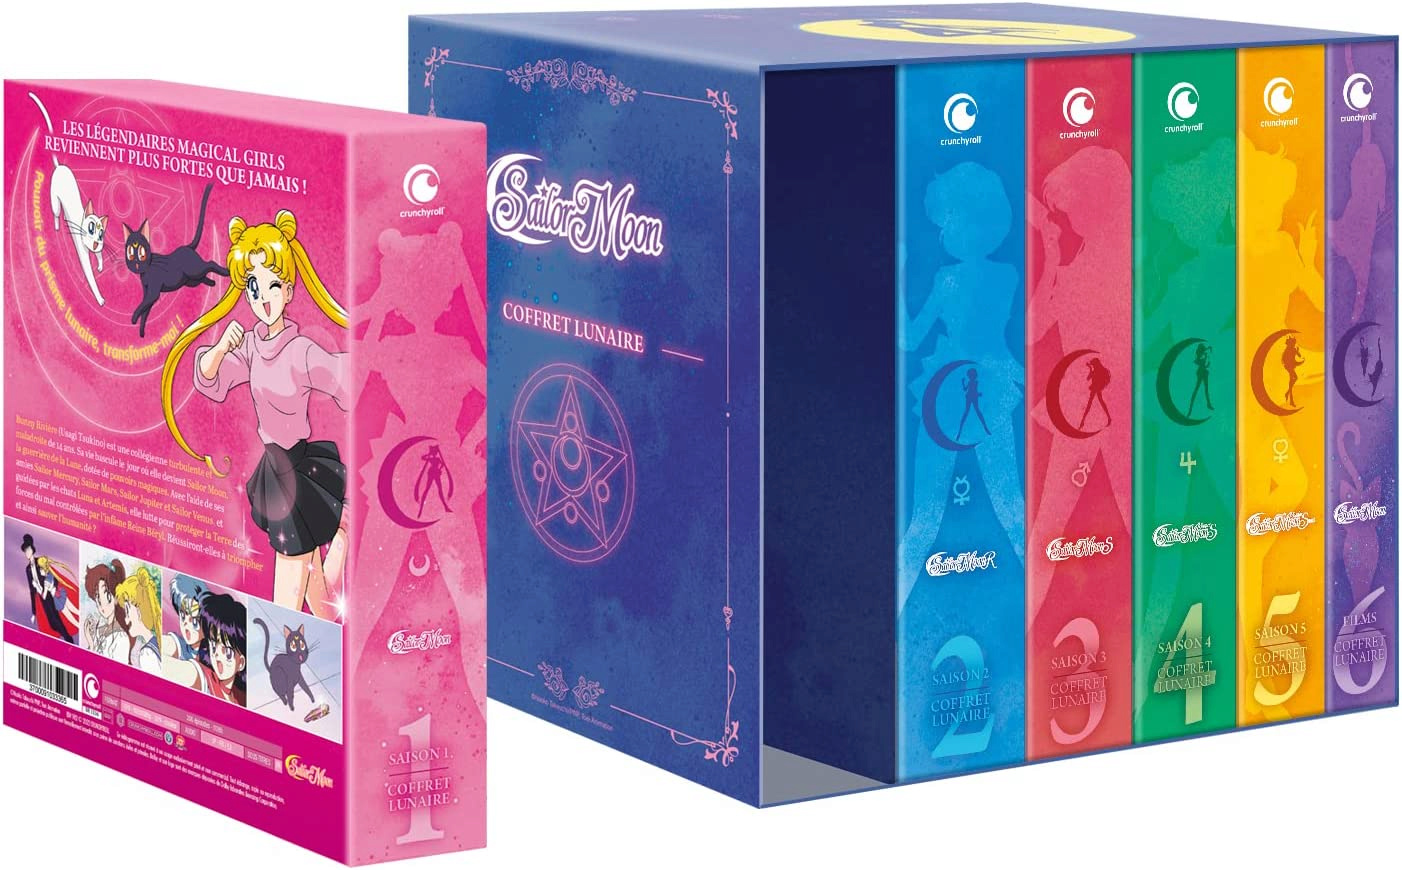 Sailor Moon réédité Blu-ray chez Kazé Image13